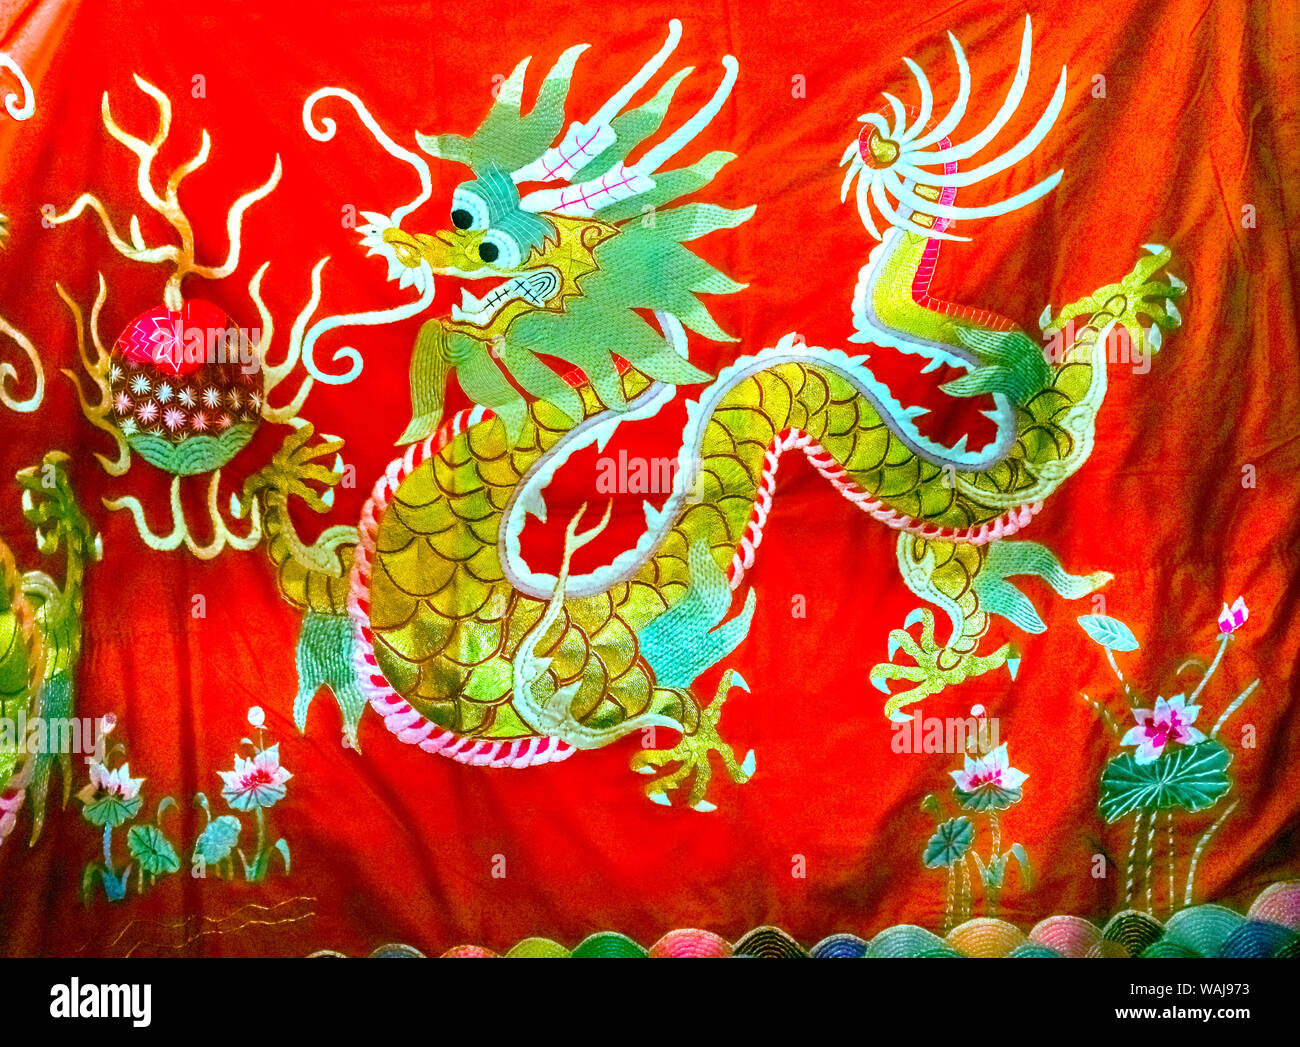 Blu, rosso e giallo dragone cinese replica, Panjuan Mercato delle Pulci decorazioni, Pechino, Cina. Panjuan Collectibles delle pulci Mercato ha molti falsi, le repliche e le copie dei prodotti cinesi. Foto Stock